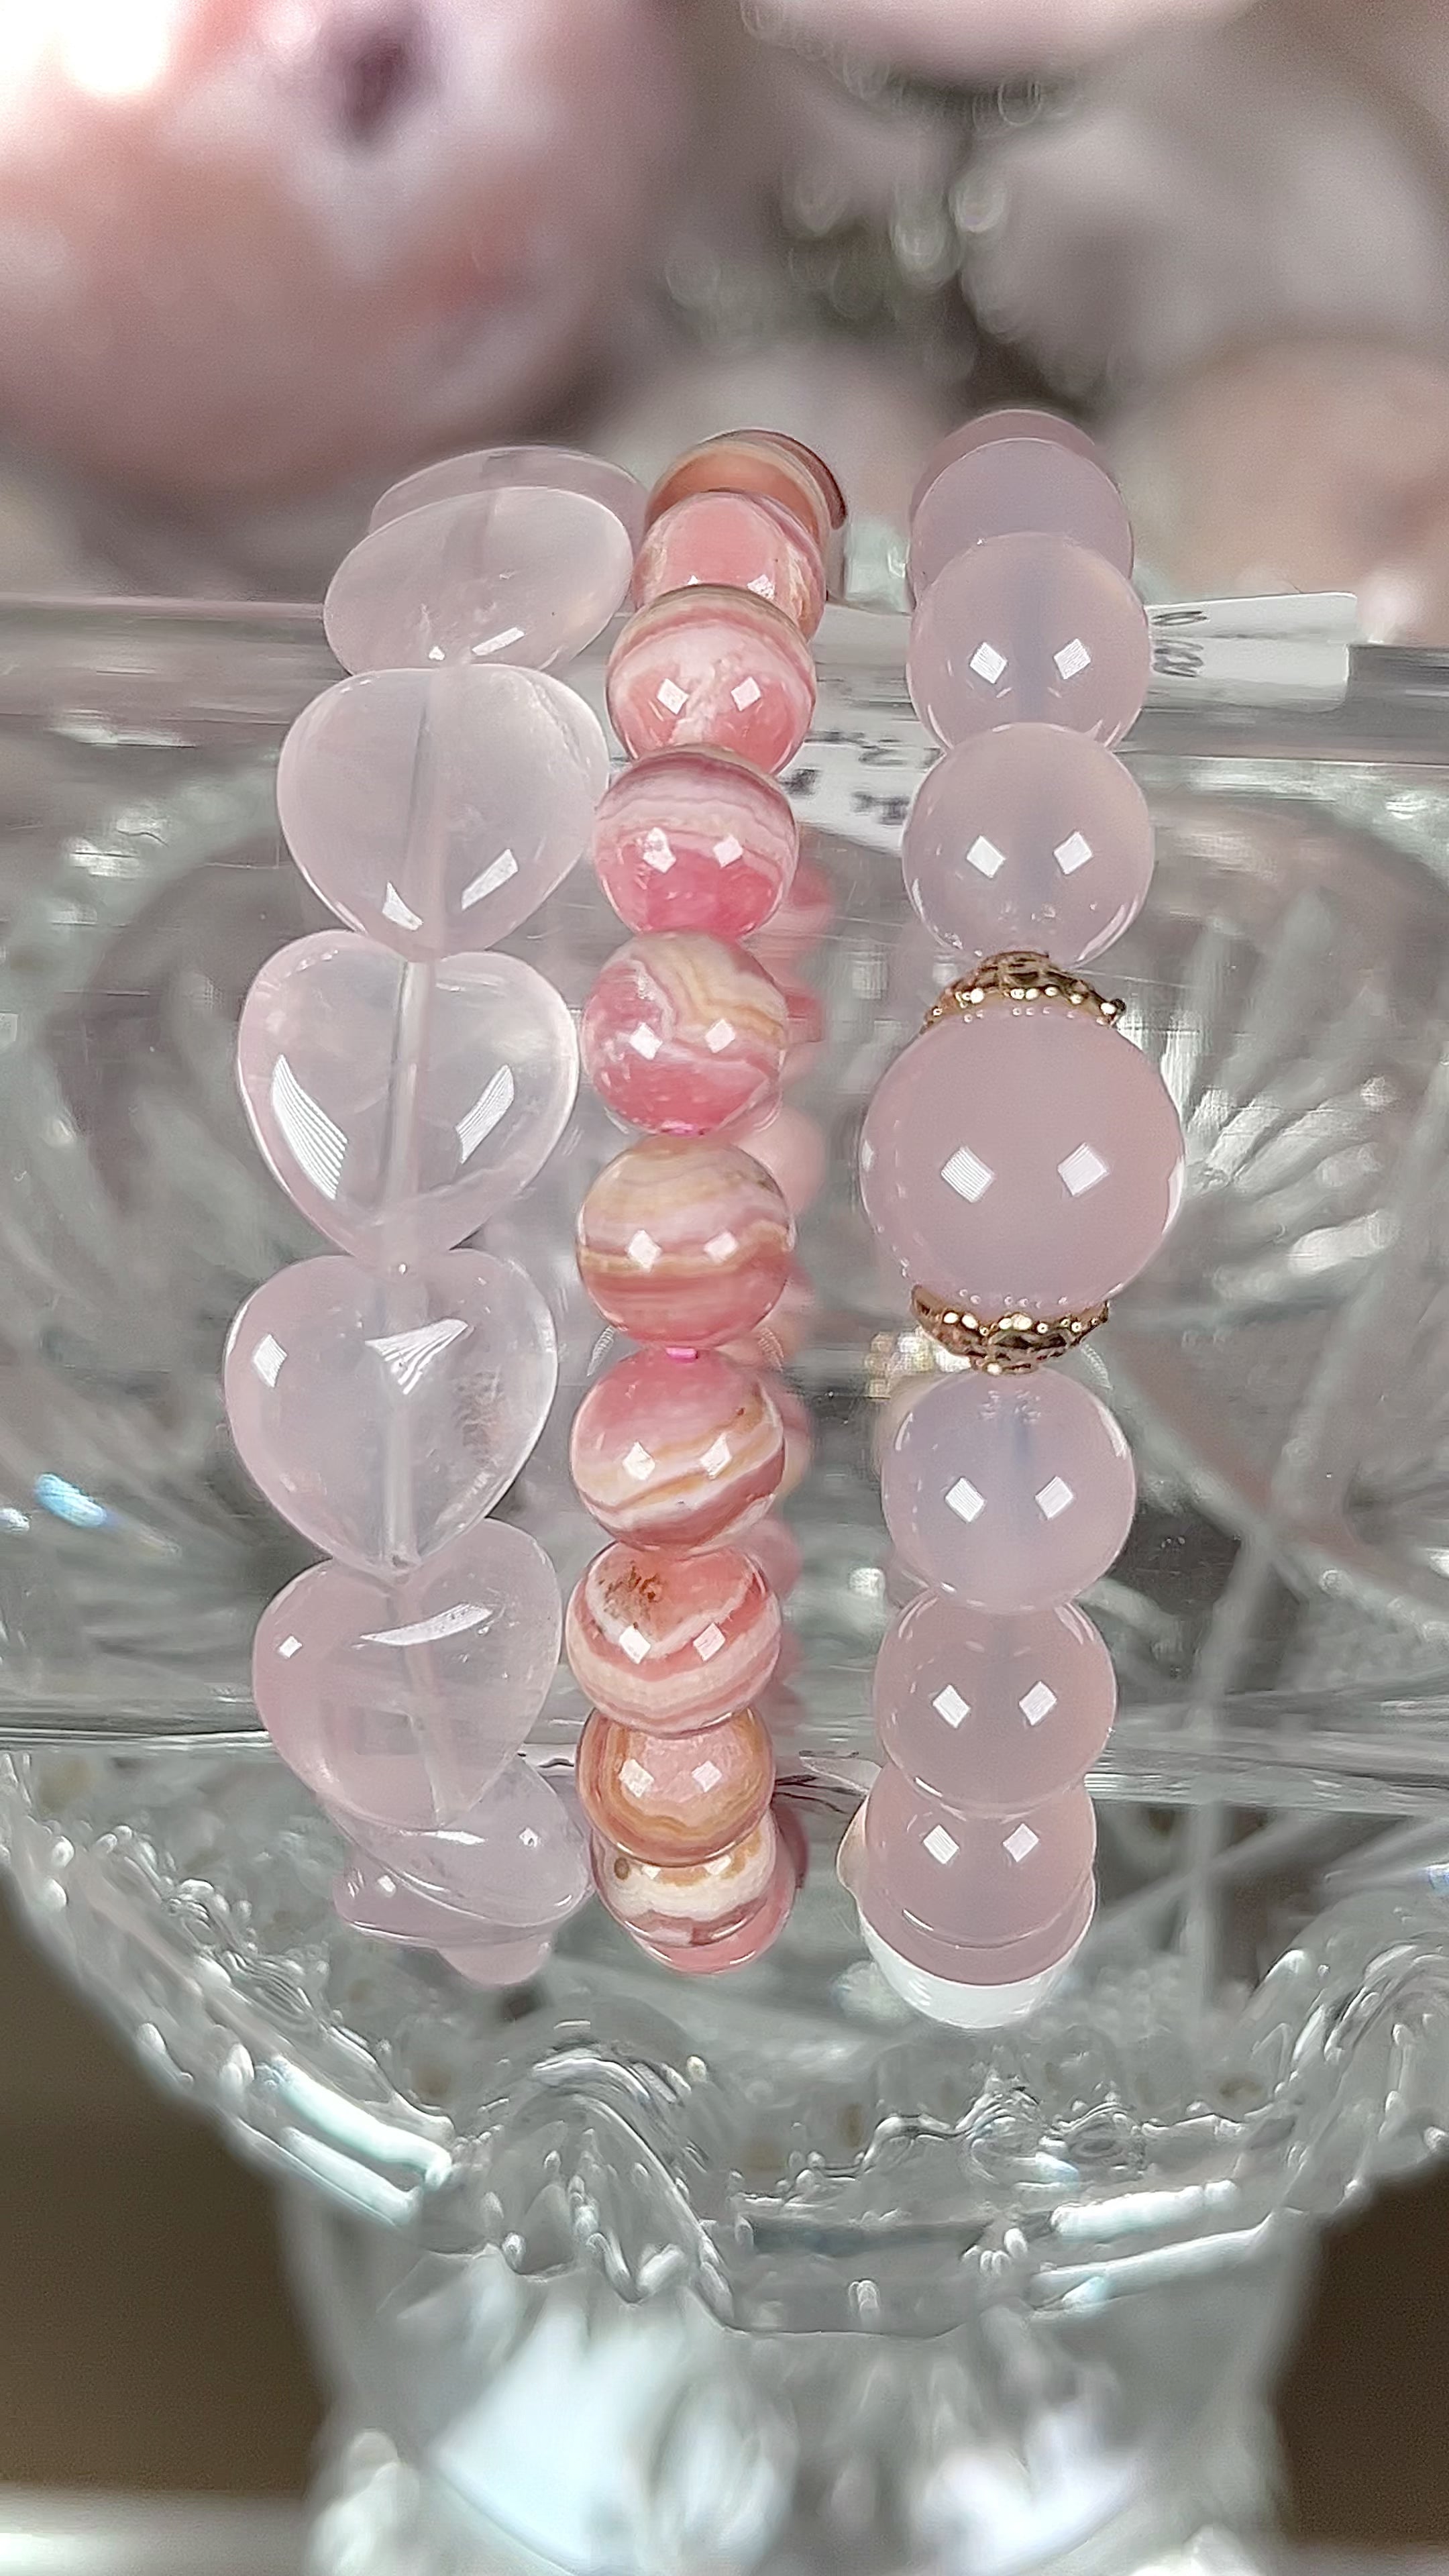 Strawberry Bracelets